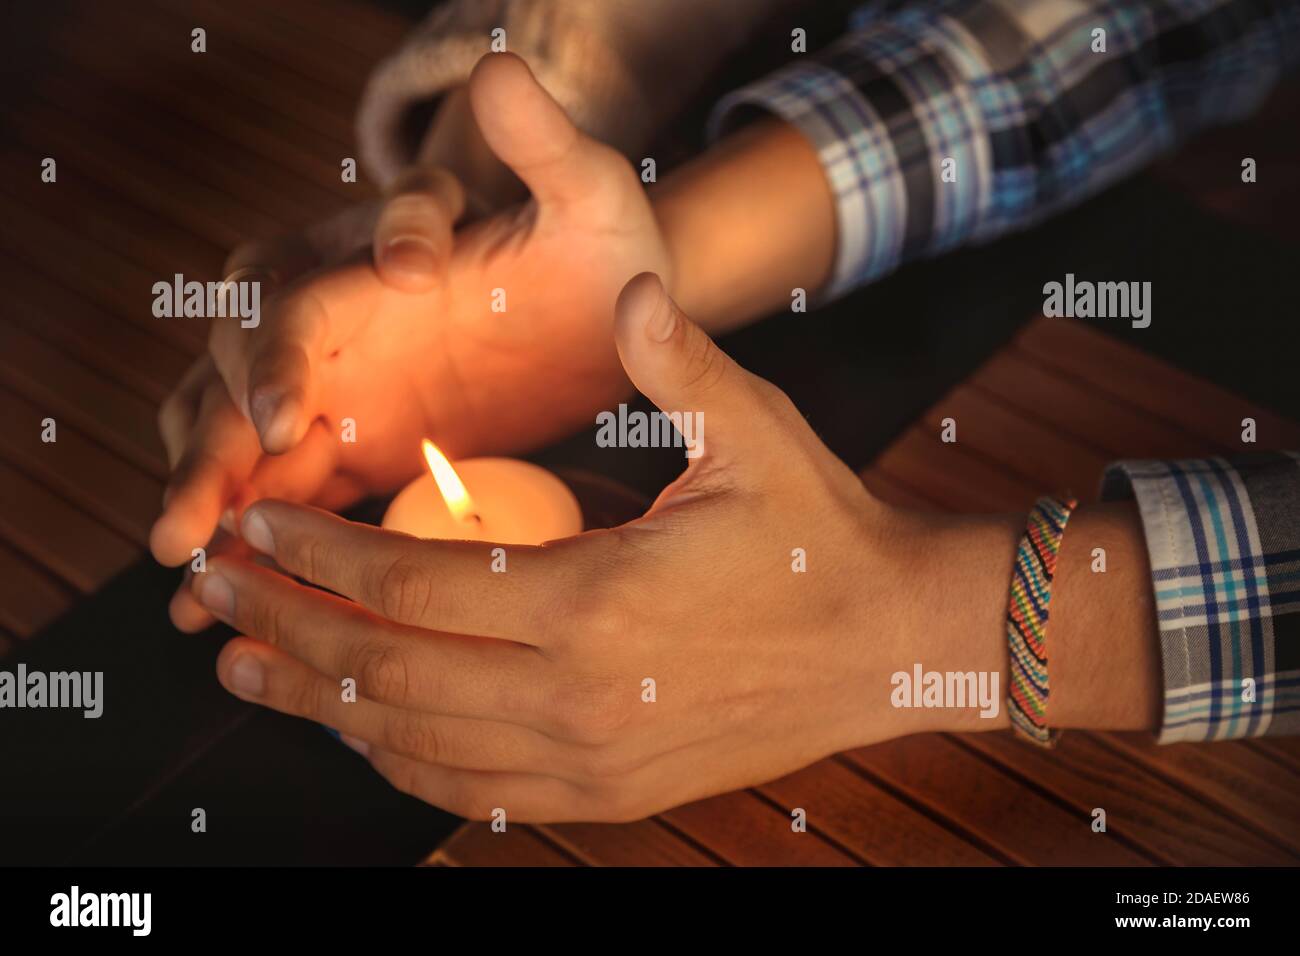 Primo piano delle mani della coppia si sono accucchiate intorno ad una candela bruciante. Mani di giovane uomo e donna che proteggono la fiamma di una candela. Concetto di storia d'amore Foto Stock